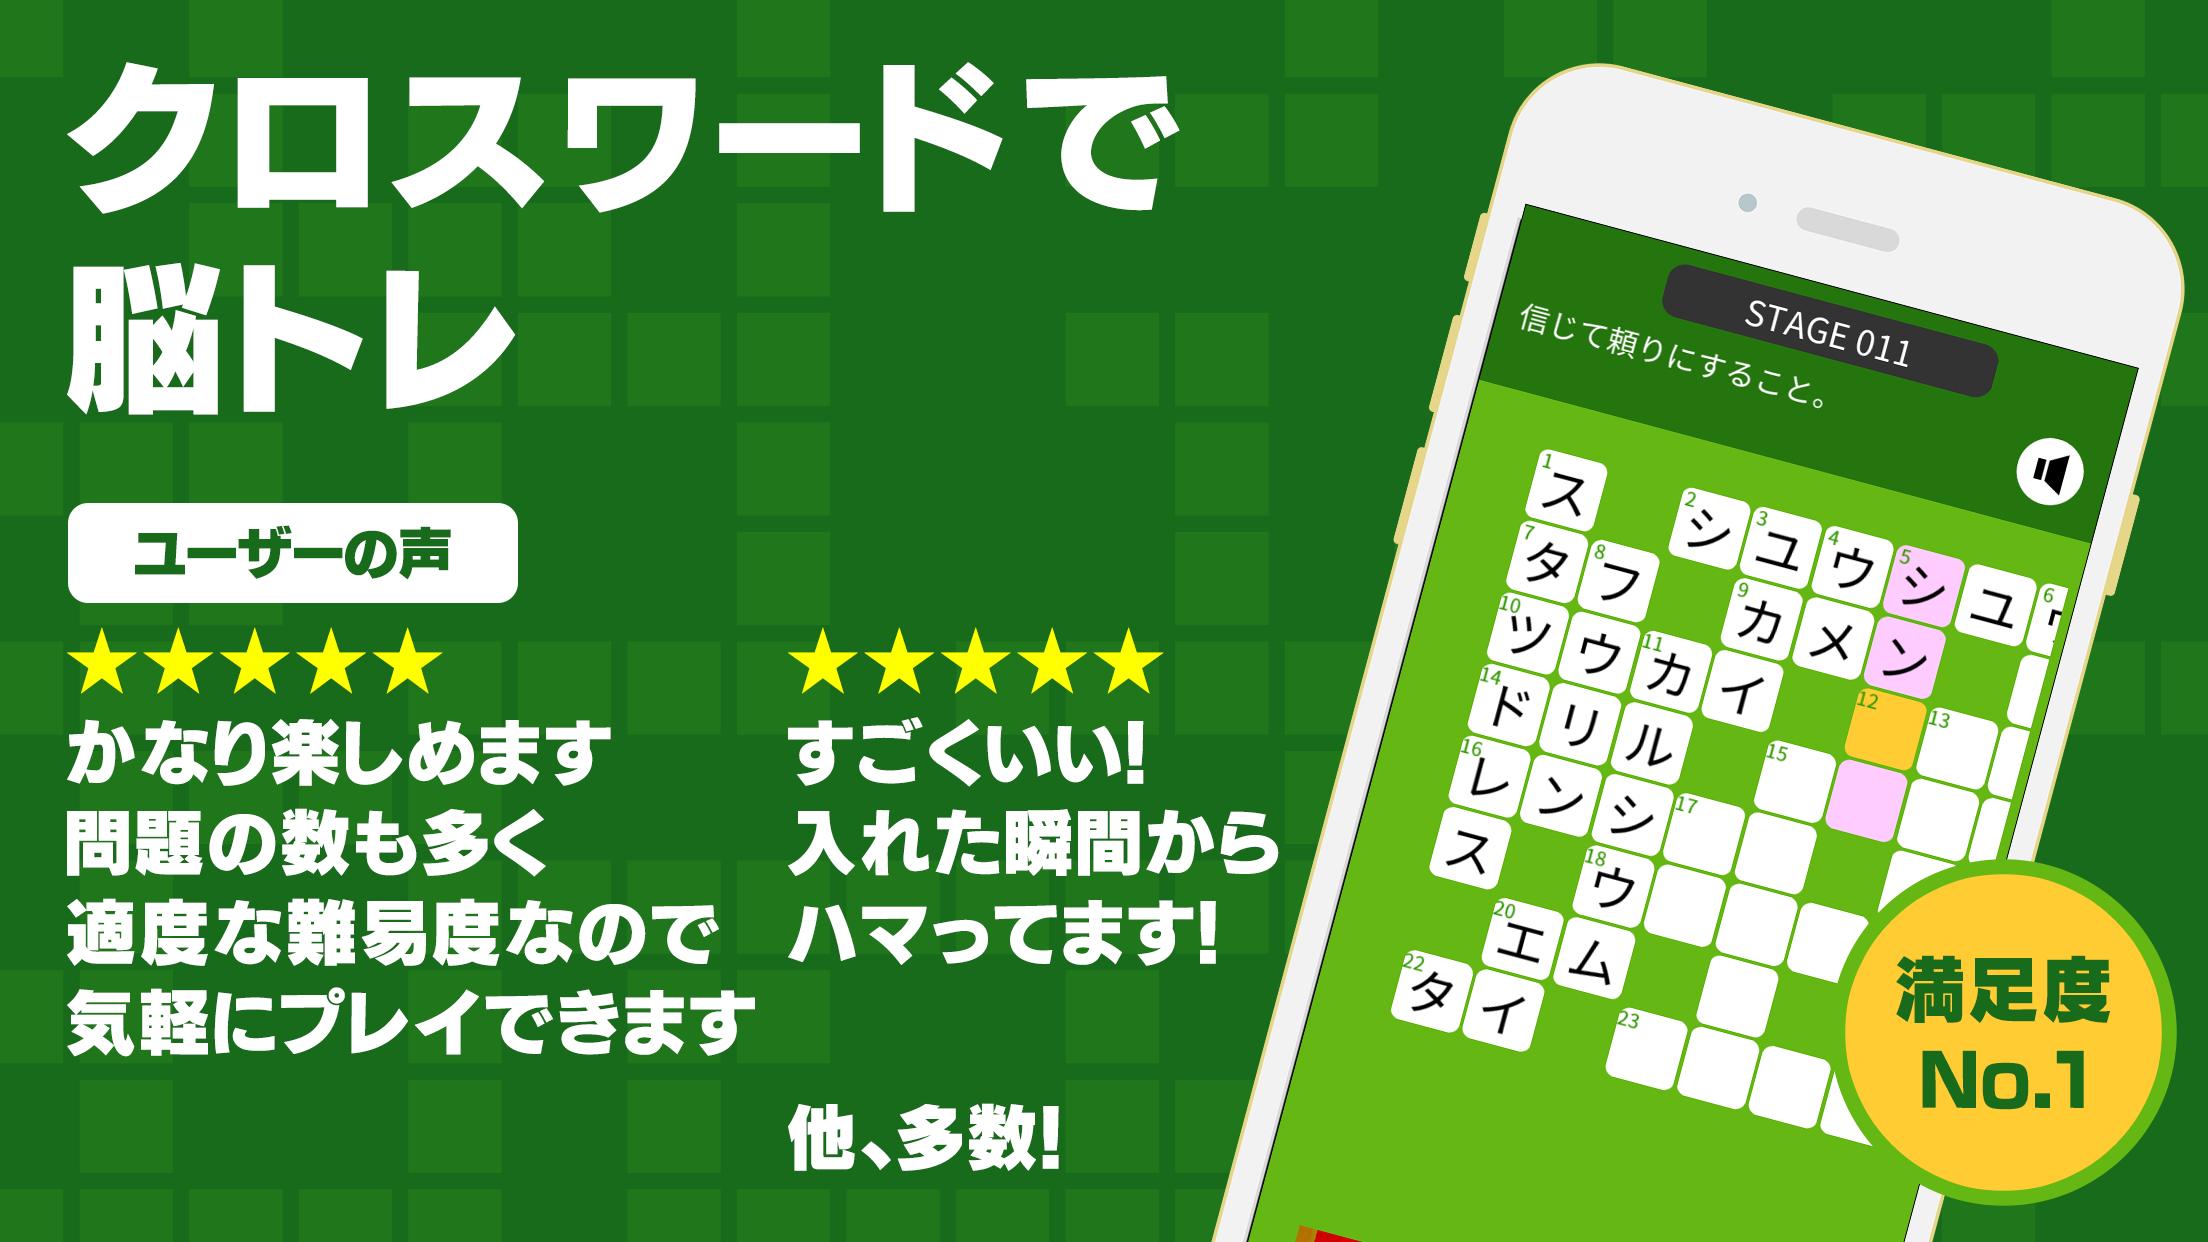 Android 用の クロスワードzero 無料の定番クロスワードパズルゲーム 言葉で解く簡単で面白い人気のパズルアプリ Apk をダウンロード